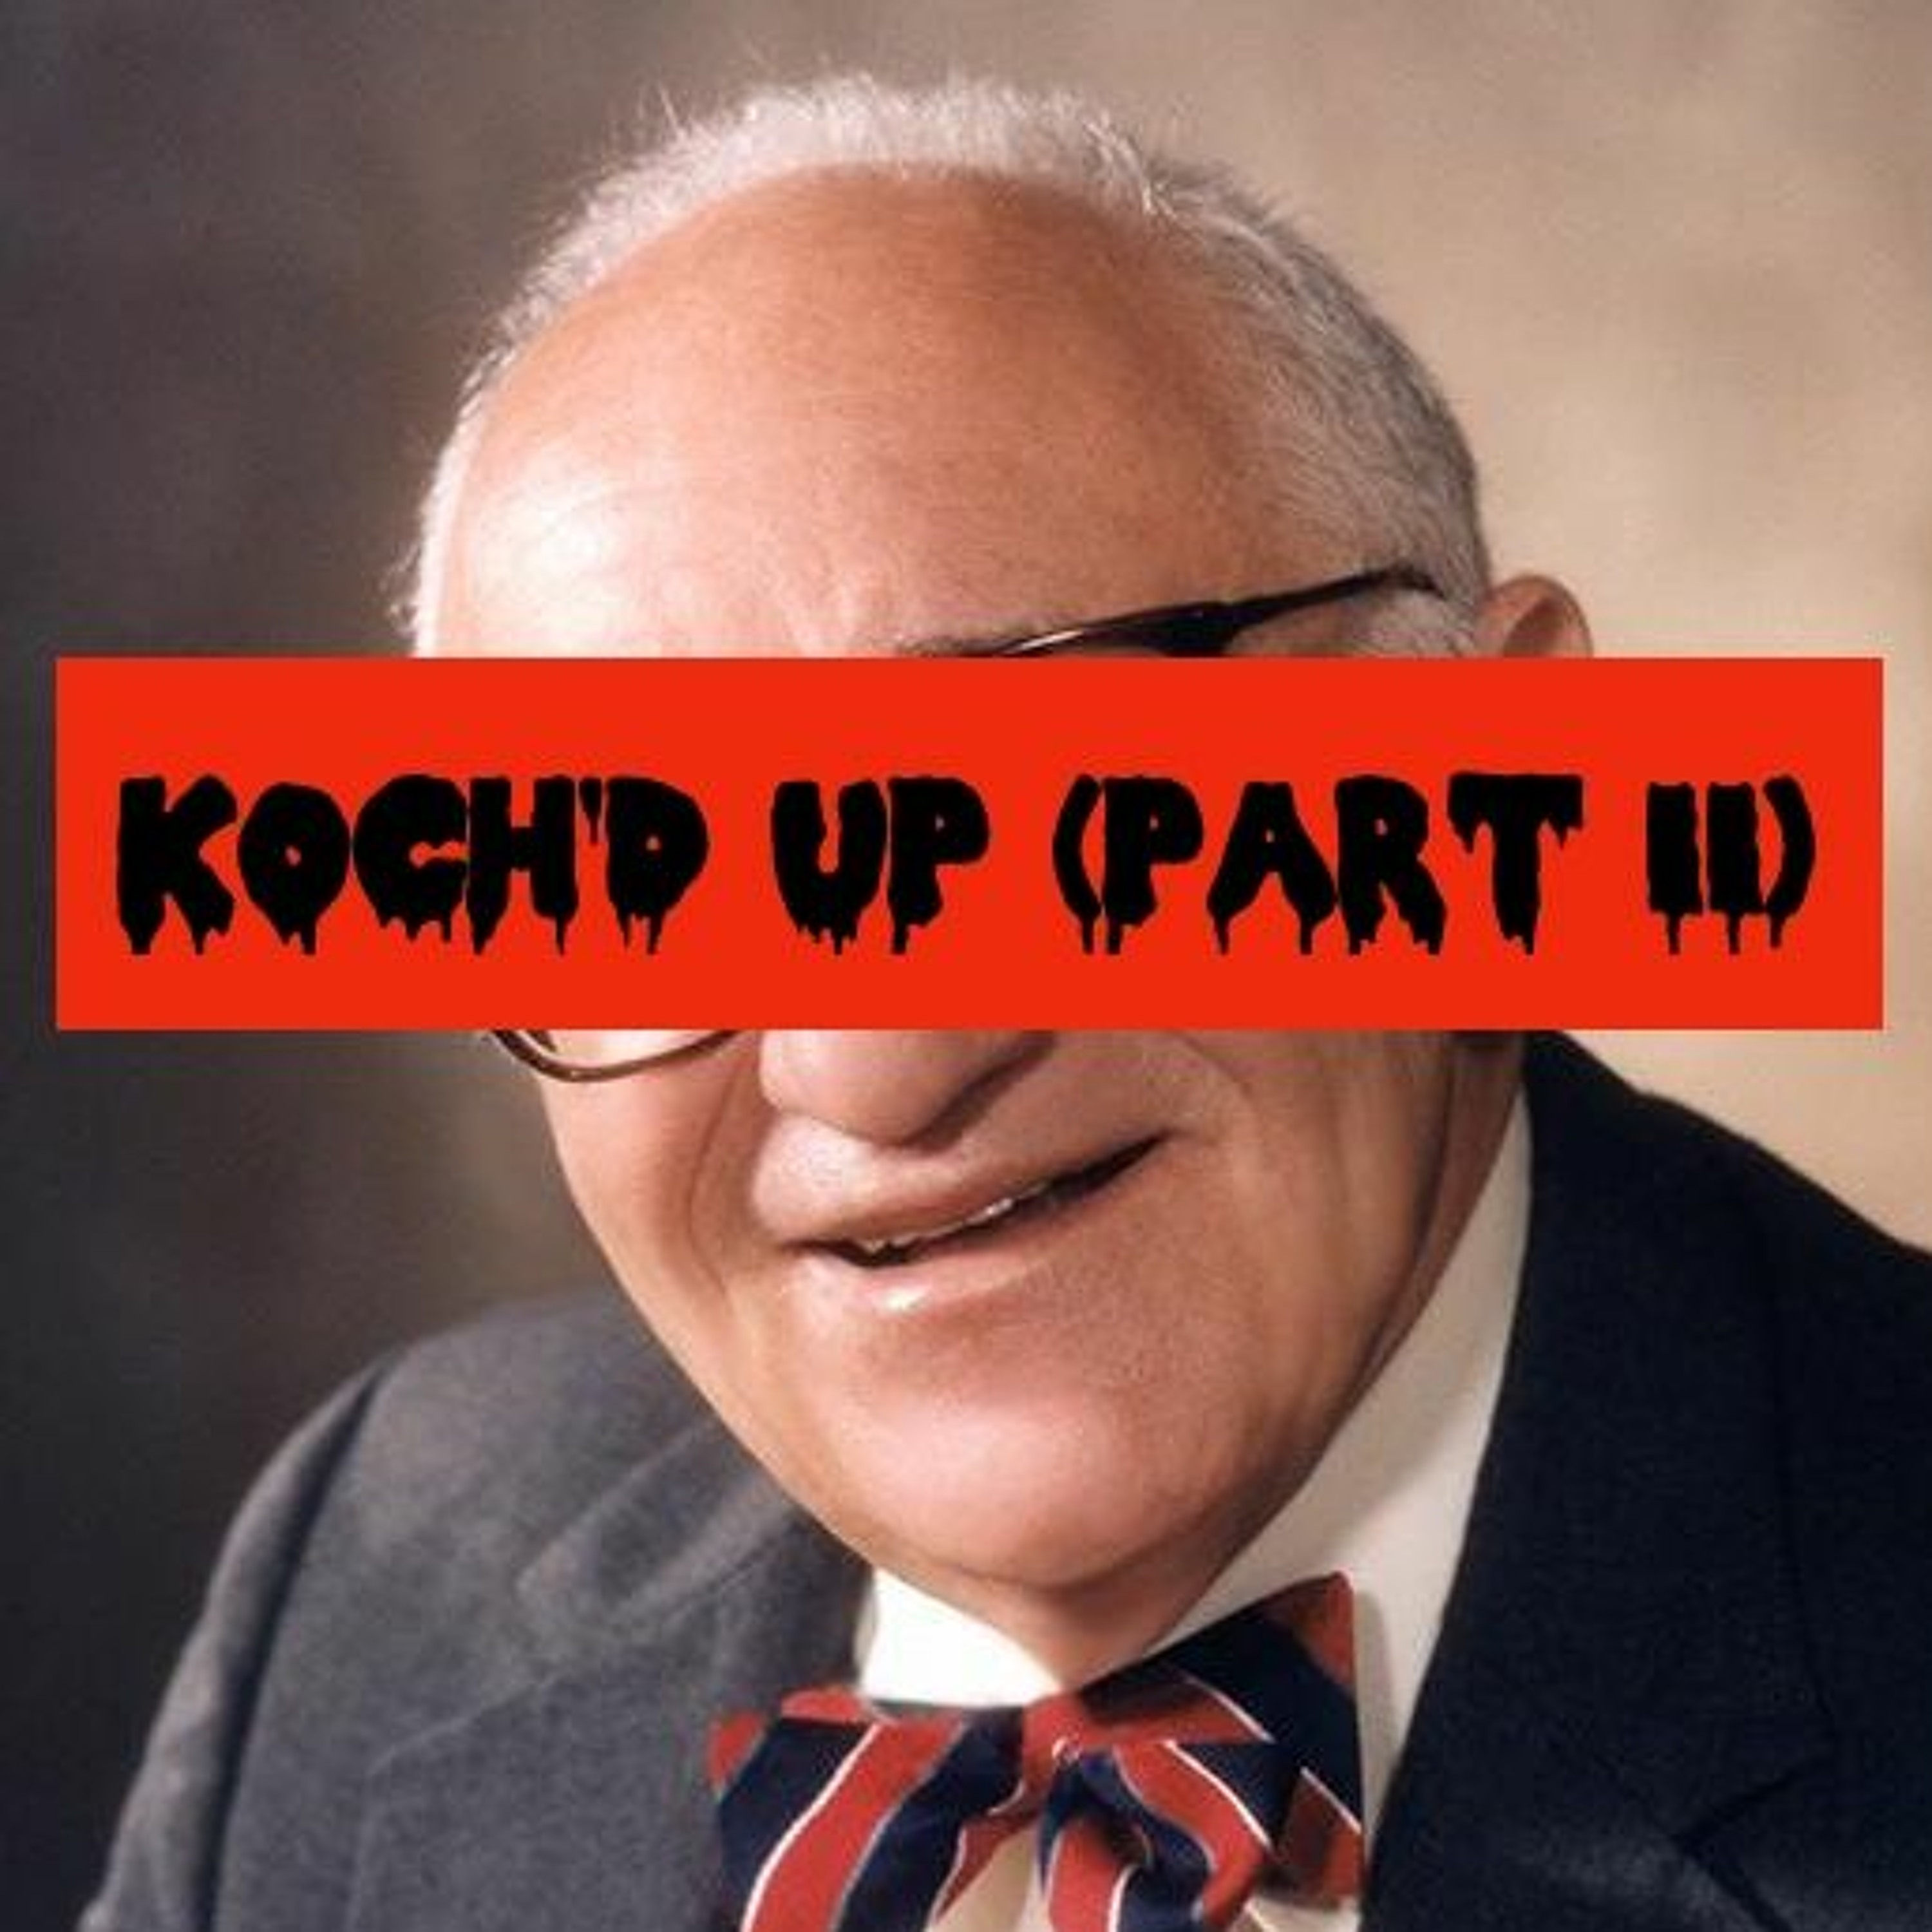 Episode 95: Koch'd Up (Part II teaser)